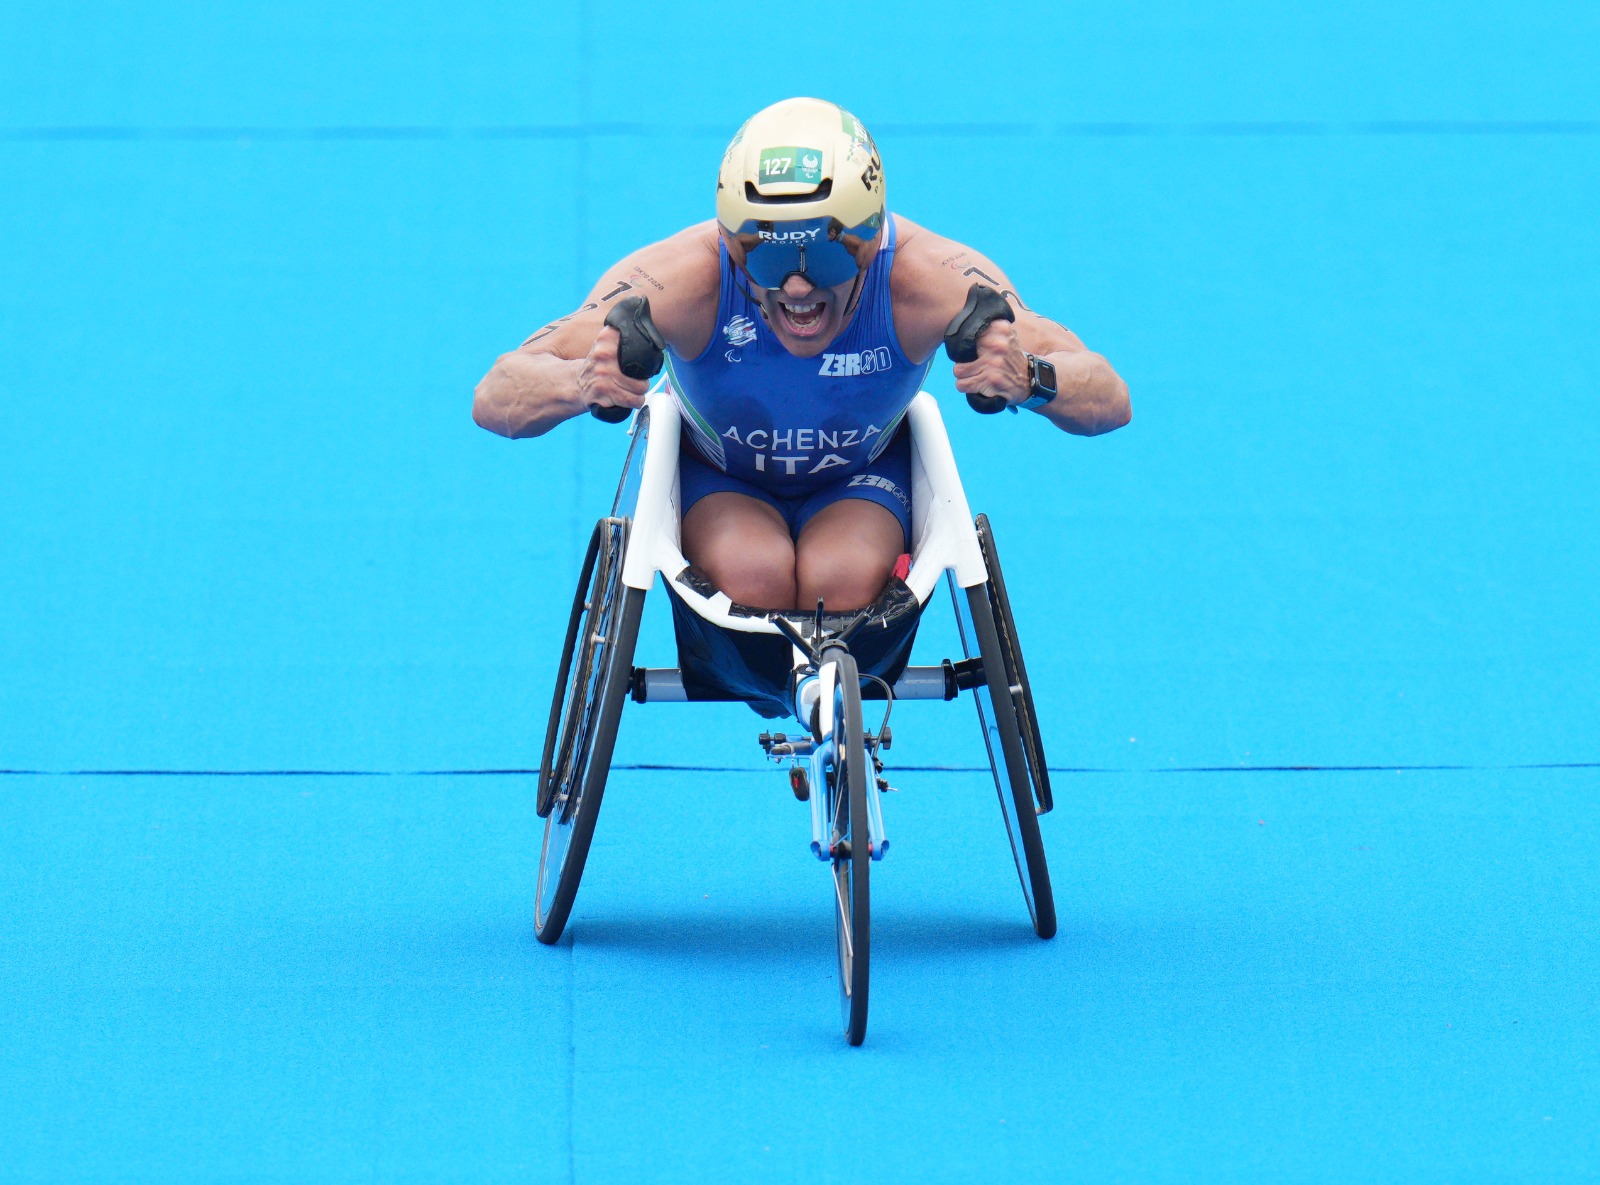 Inossidabile Giovanni Achenza: è medaglia di bronzo ai Giochi Paralimpici di Tokyo 2020